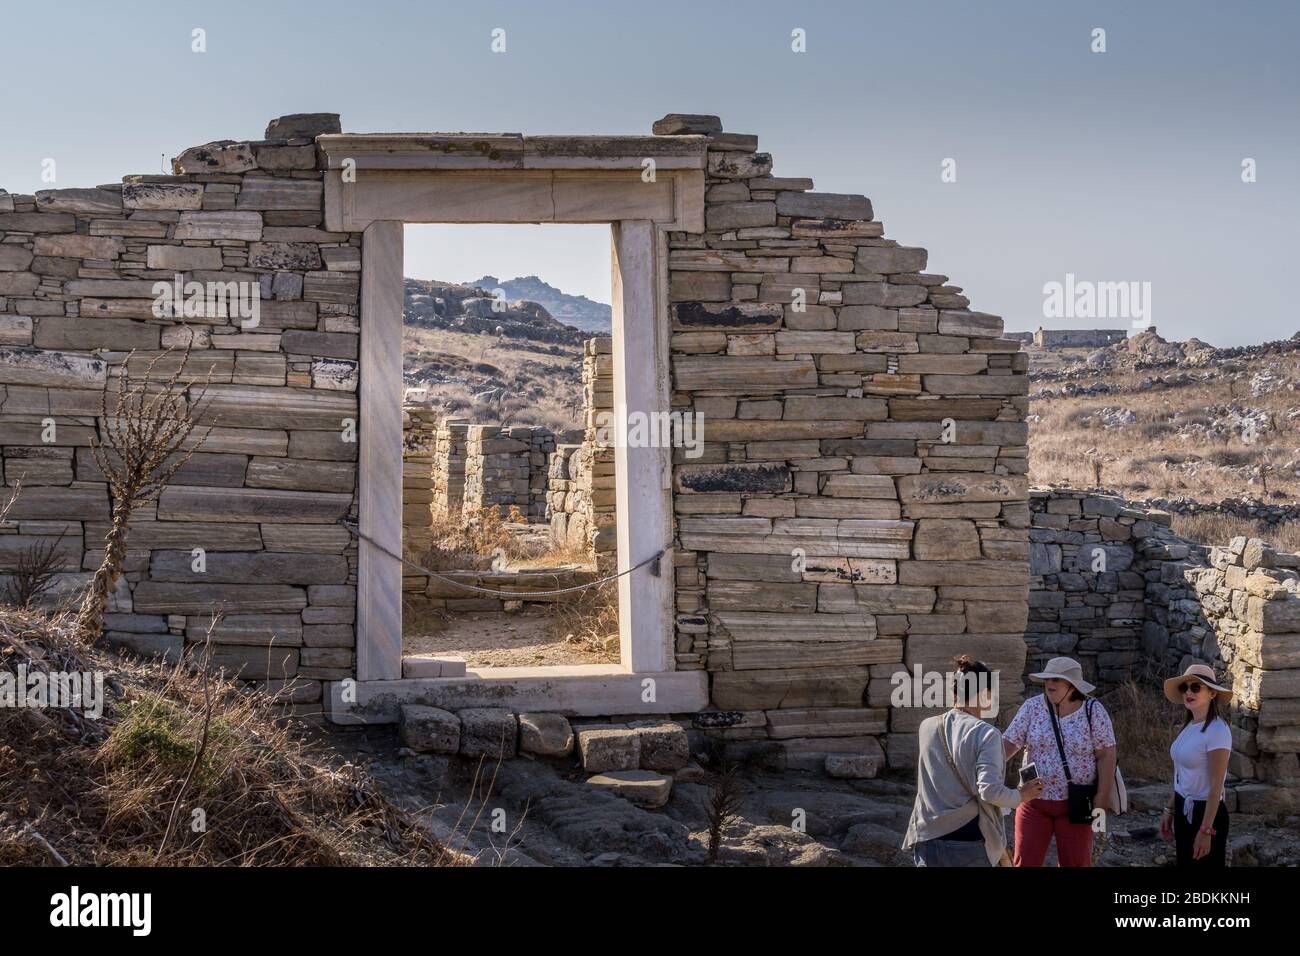 Delos, Grecia - 15 ottobre 2019. Persone che visitano le rovine dell'isola di Delos, Grecia, un sito archeologico vicino a Mykonos nell'arco delle Cicladi del Mar Egeo Foto Stock